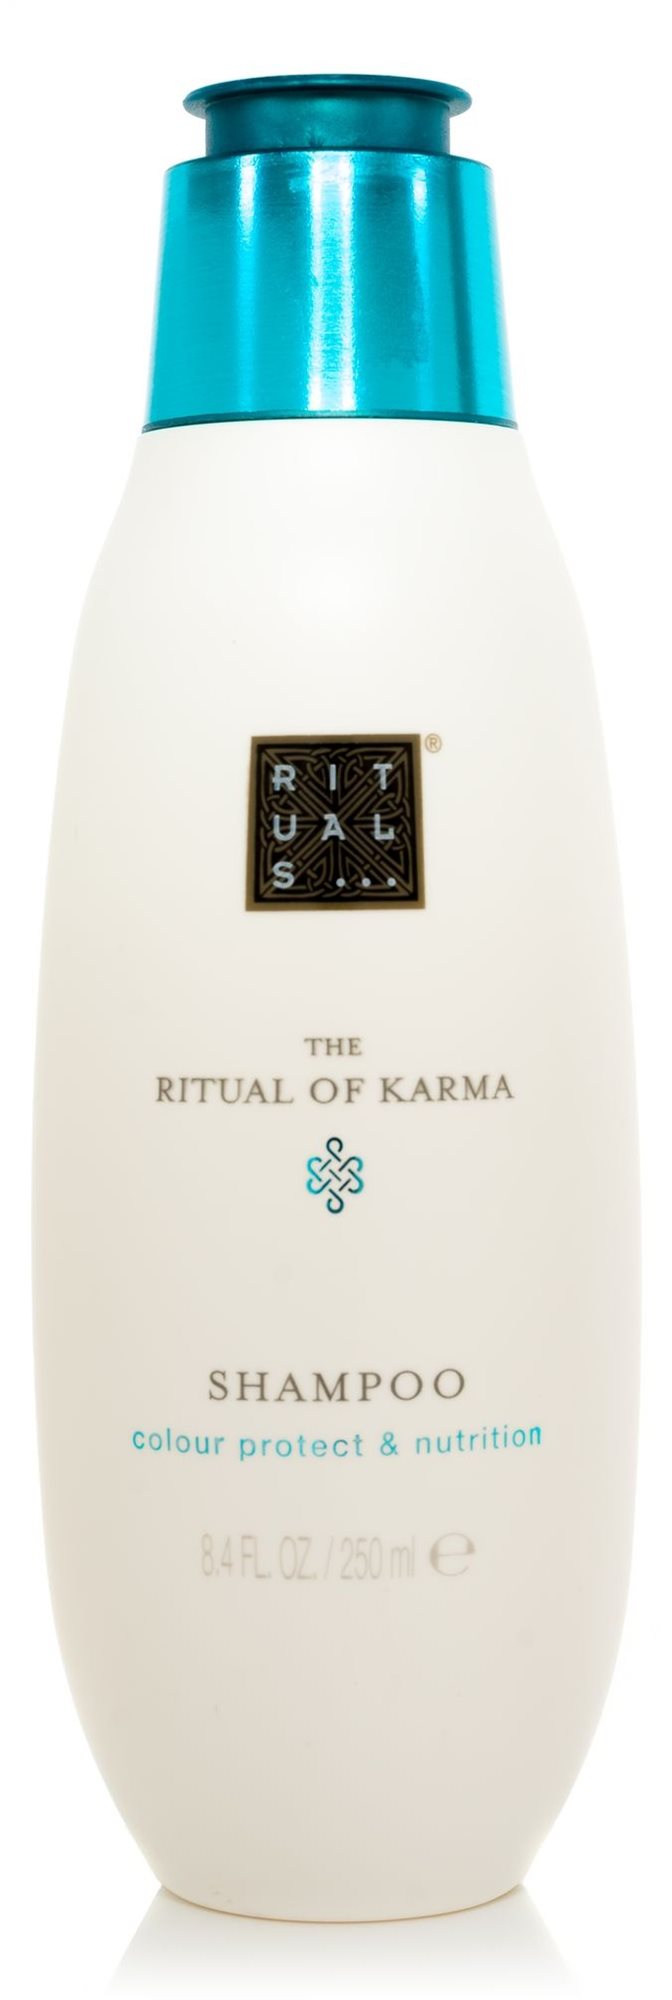 Sampon RITUALS The Ritual of Karma Shampoo 250 ml